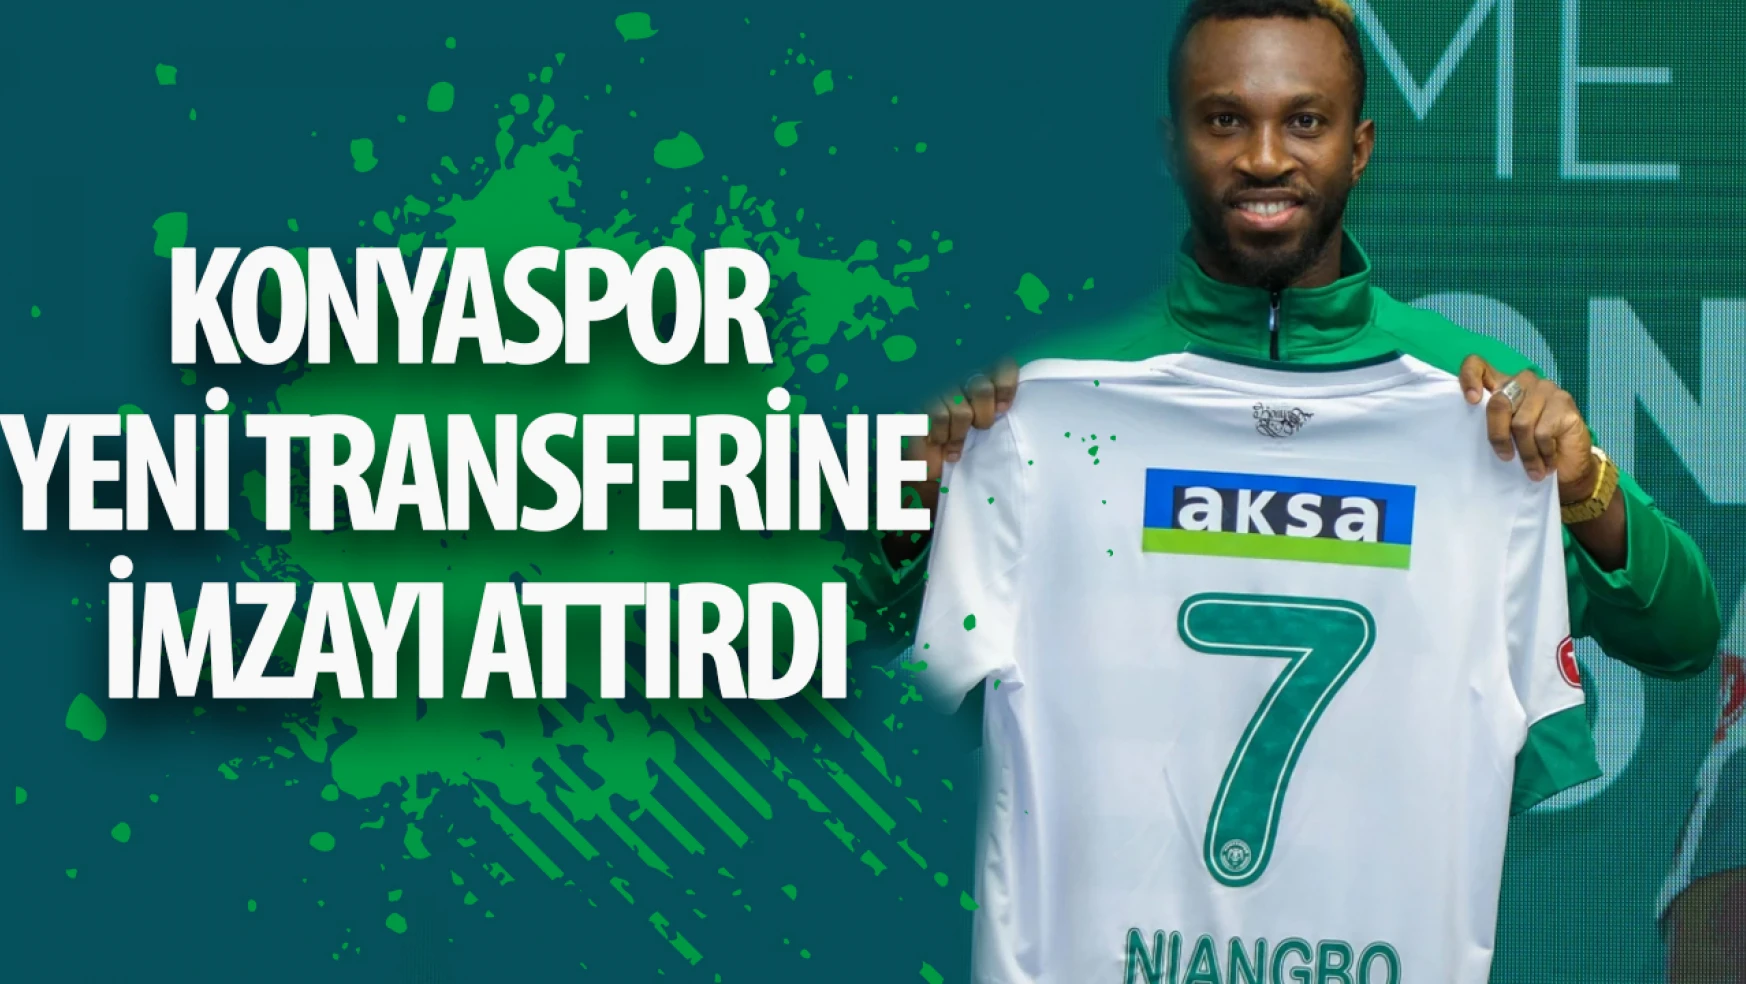 Konyaspor yeni transferine imzayı attırdı!